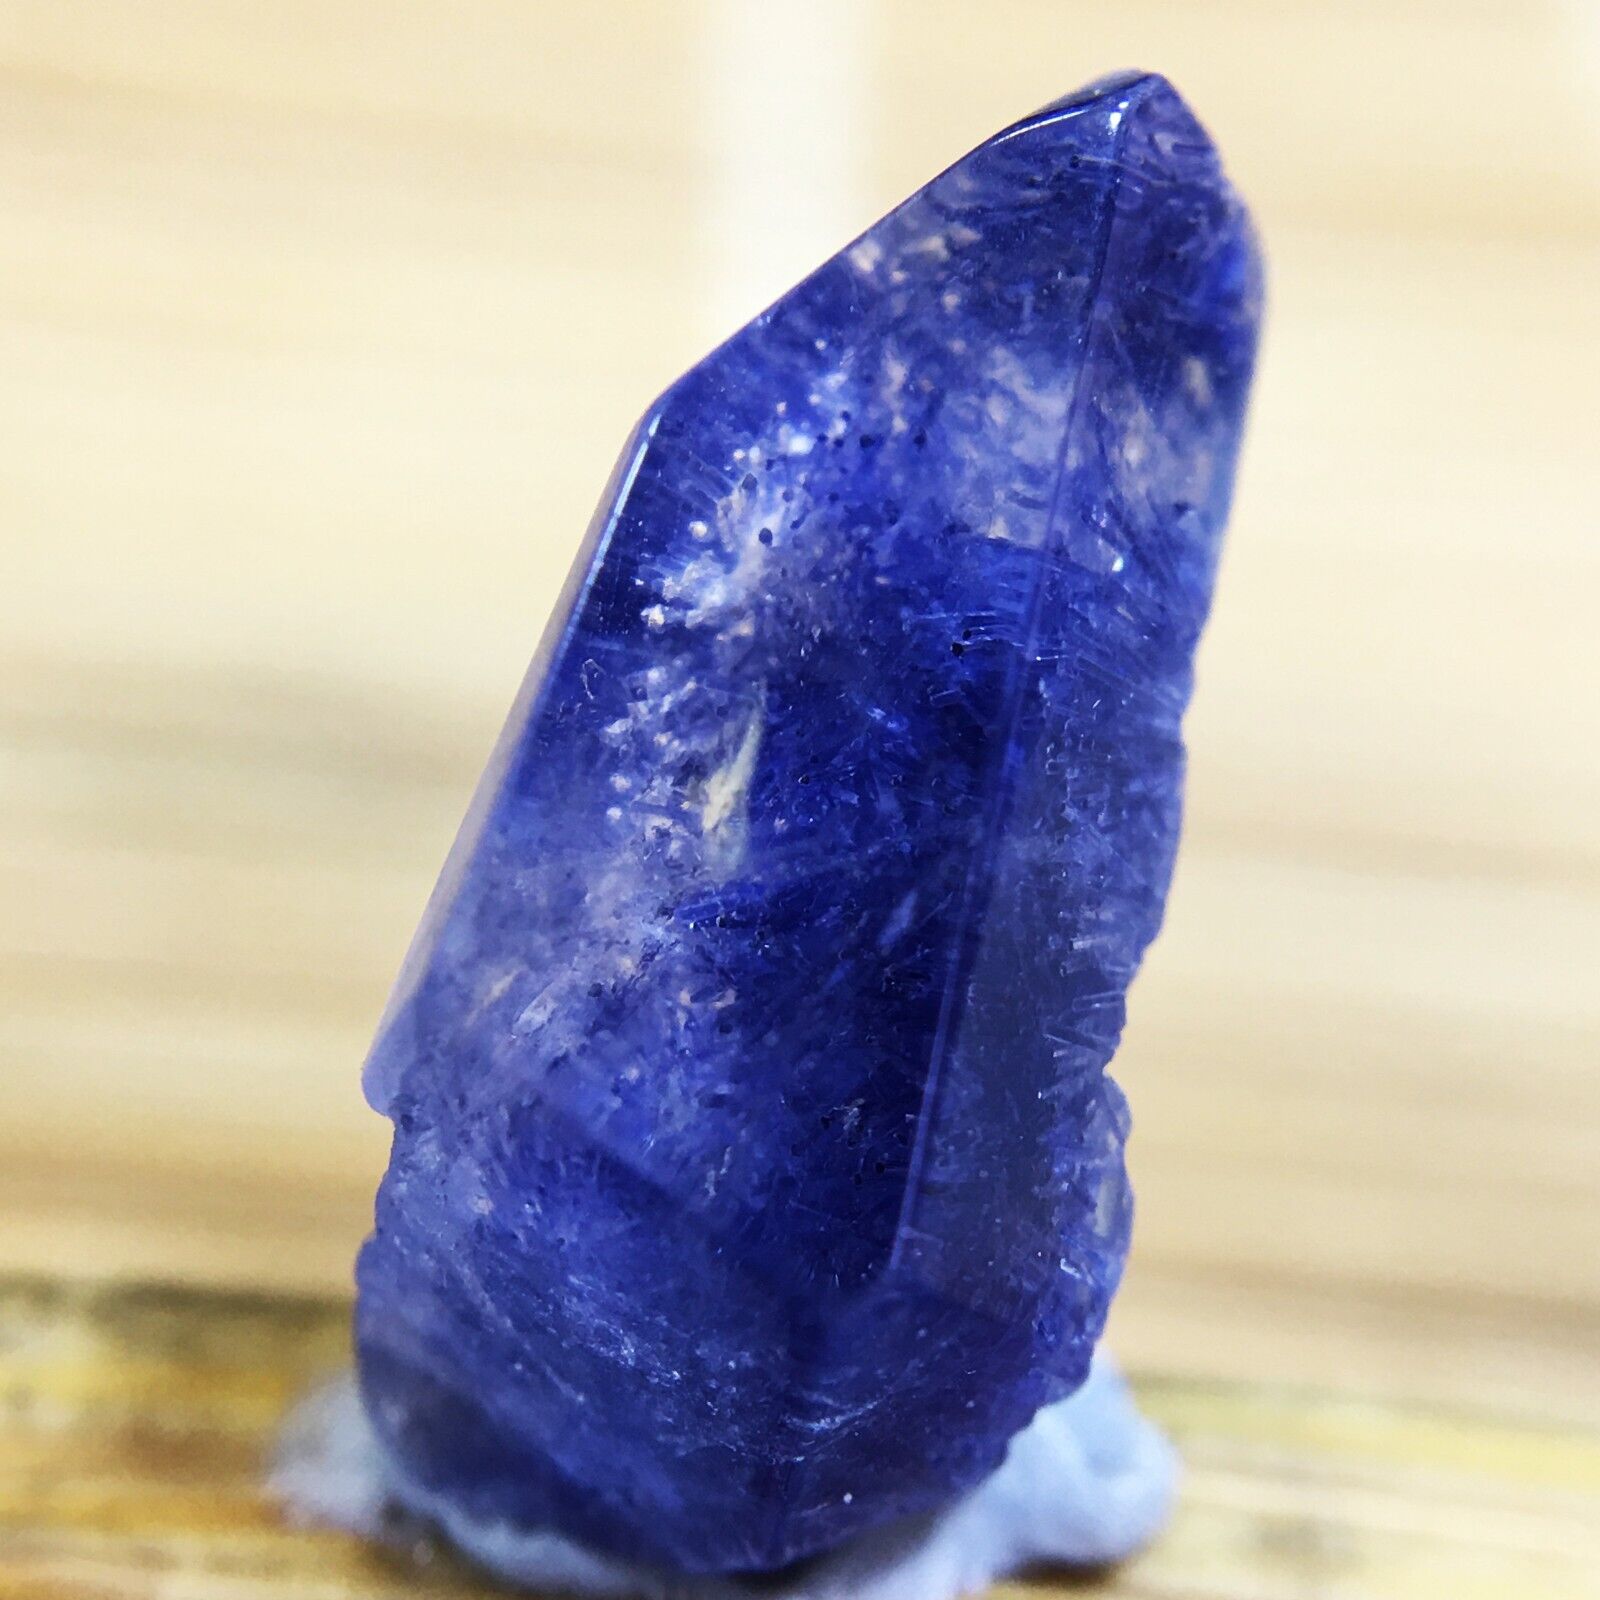 2.2Ct Very Rare NATURAL Beautiful Blue Dumortierite Quartz Crystal Specimen